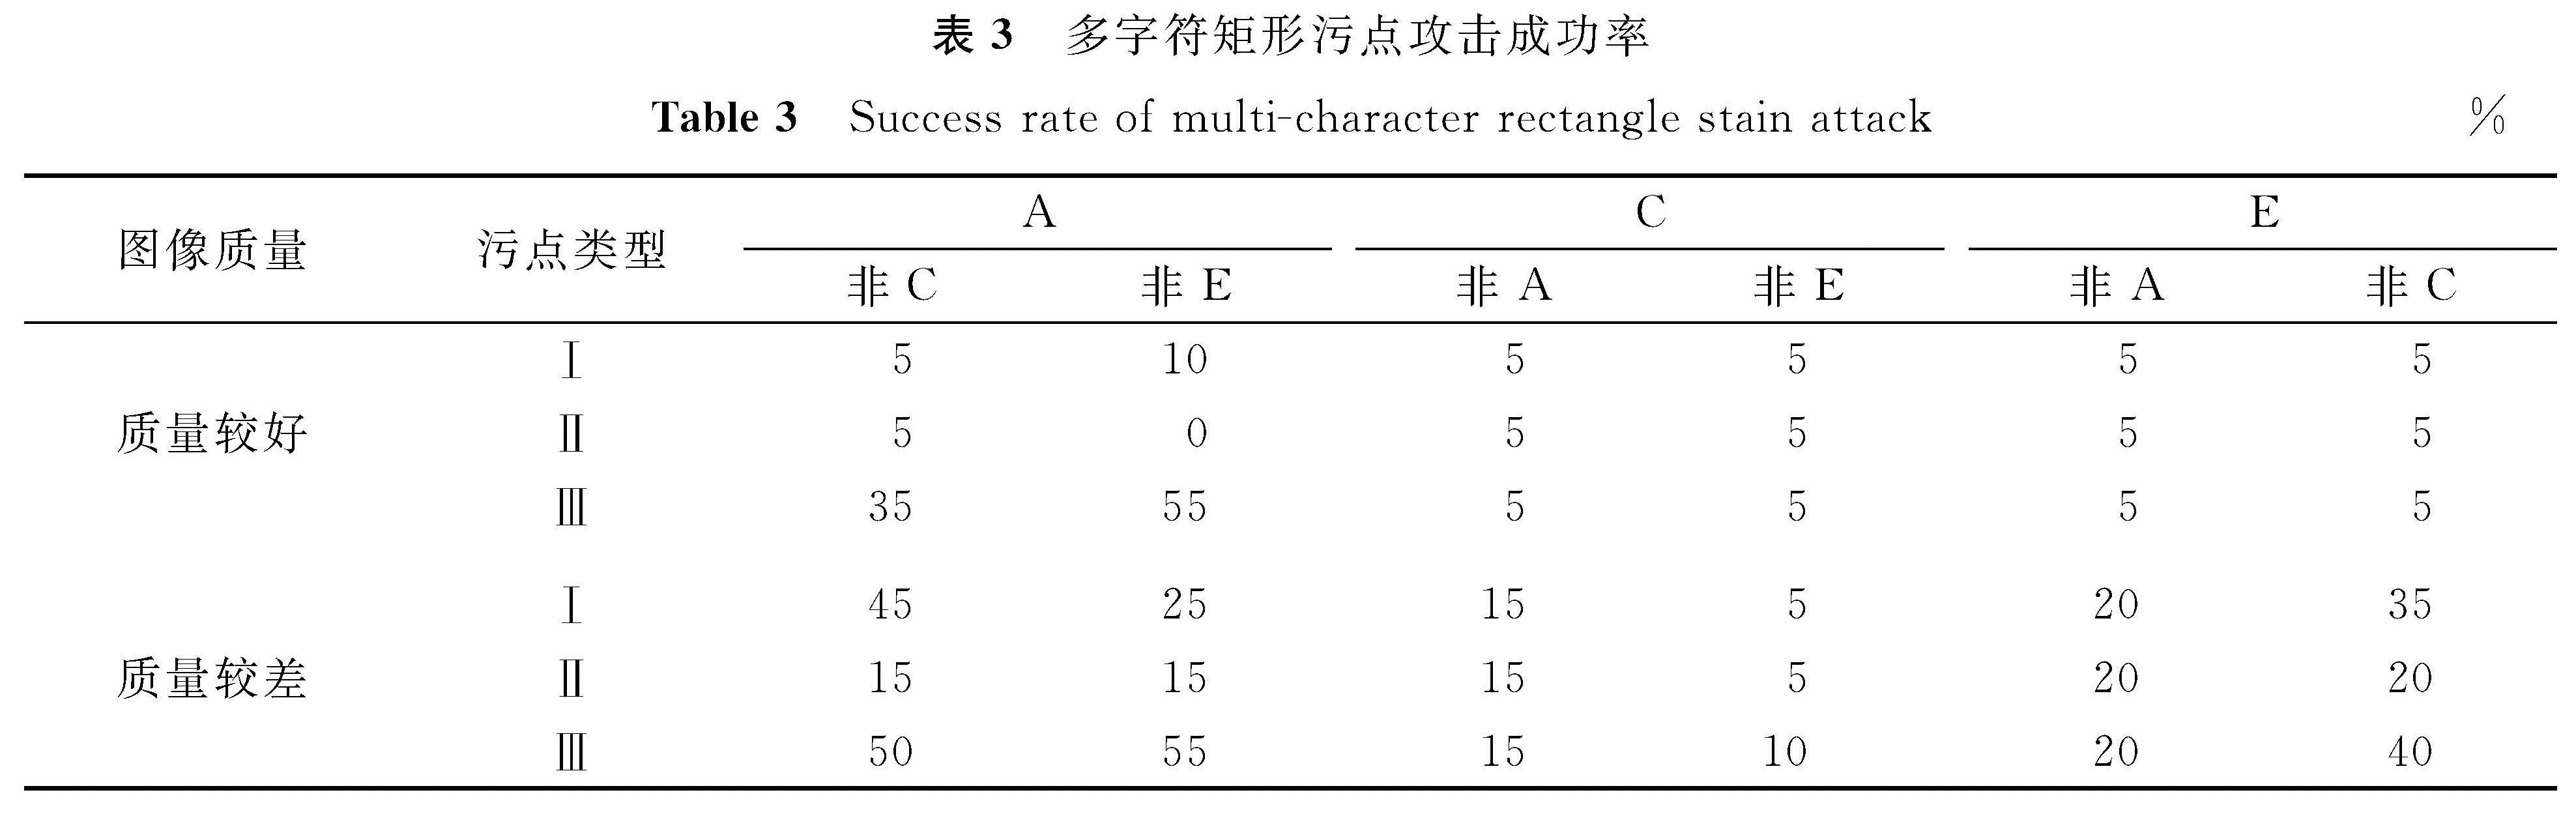 表3 多字符矩形污点攻击成功率<br/>Table 3 Success rate of multi-character rectangle stain attack%